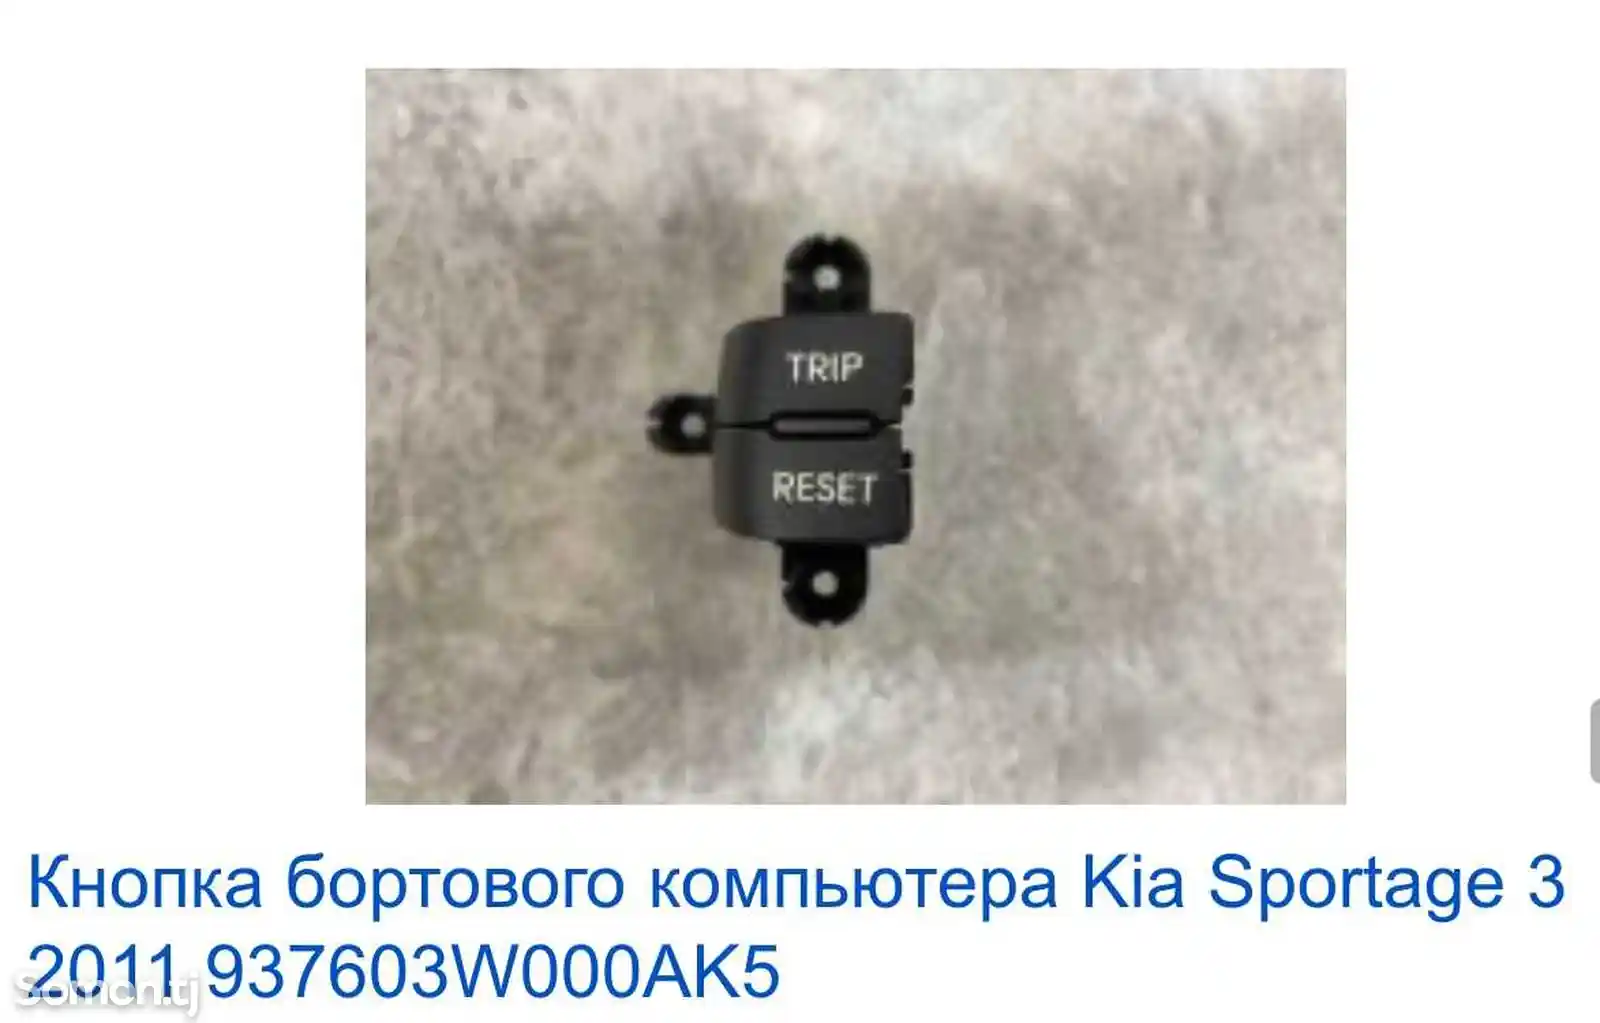 Кнопка бортового компьютера Trip/Reset-2